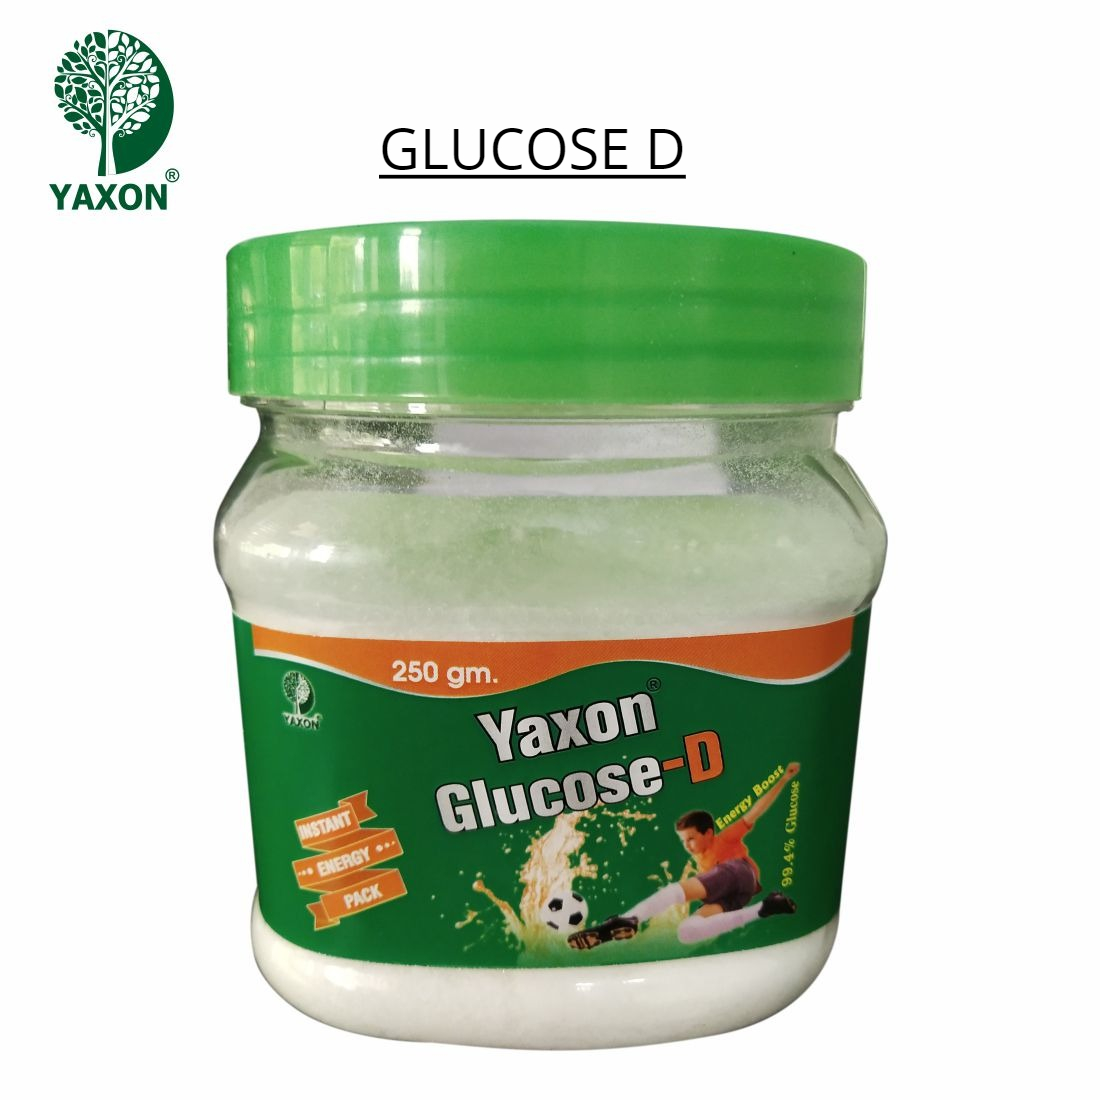 YAXON Glucose D 250gm Jar